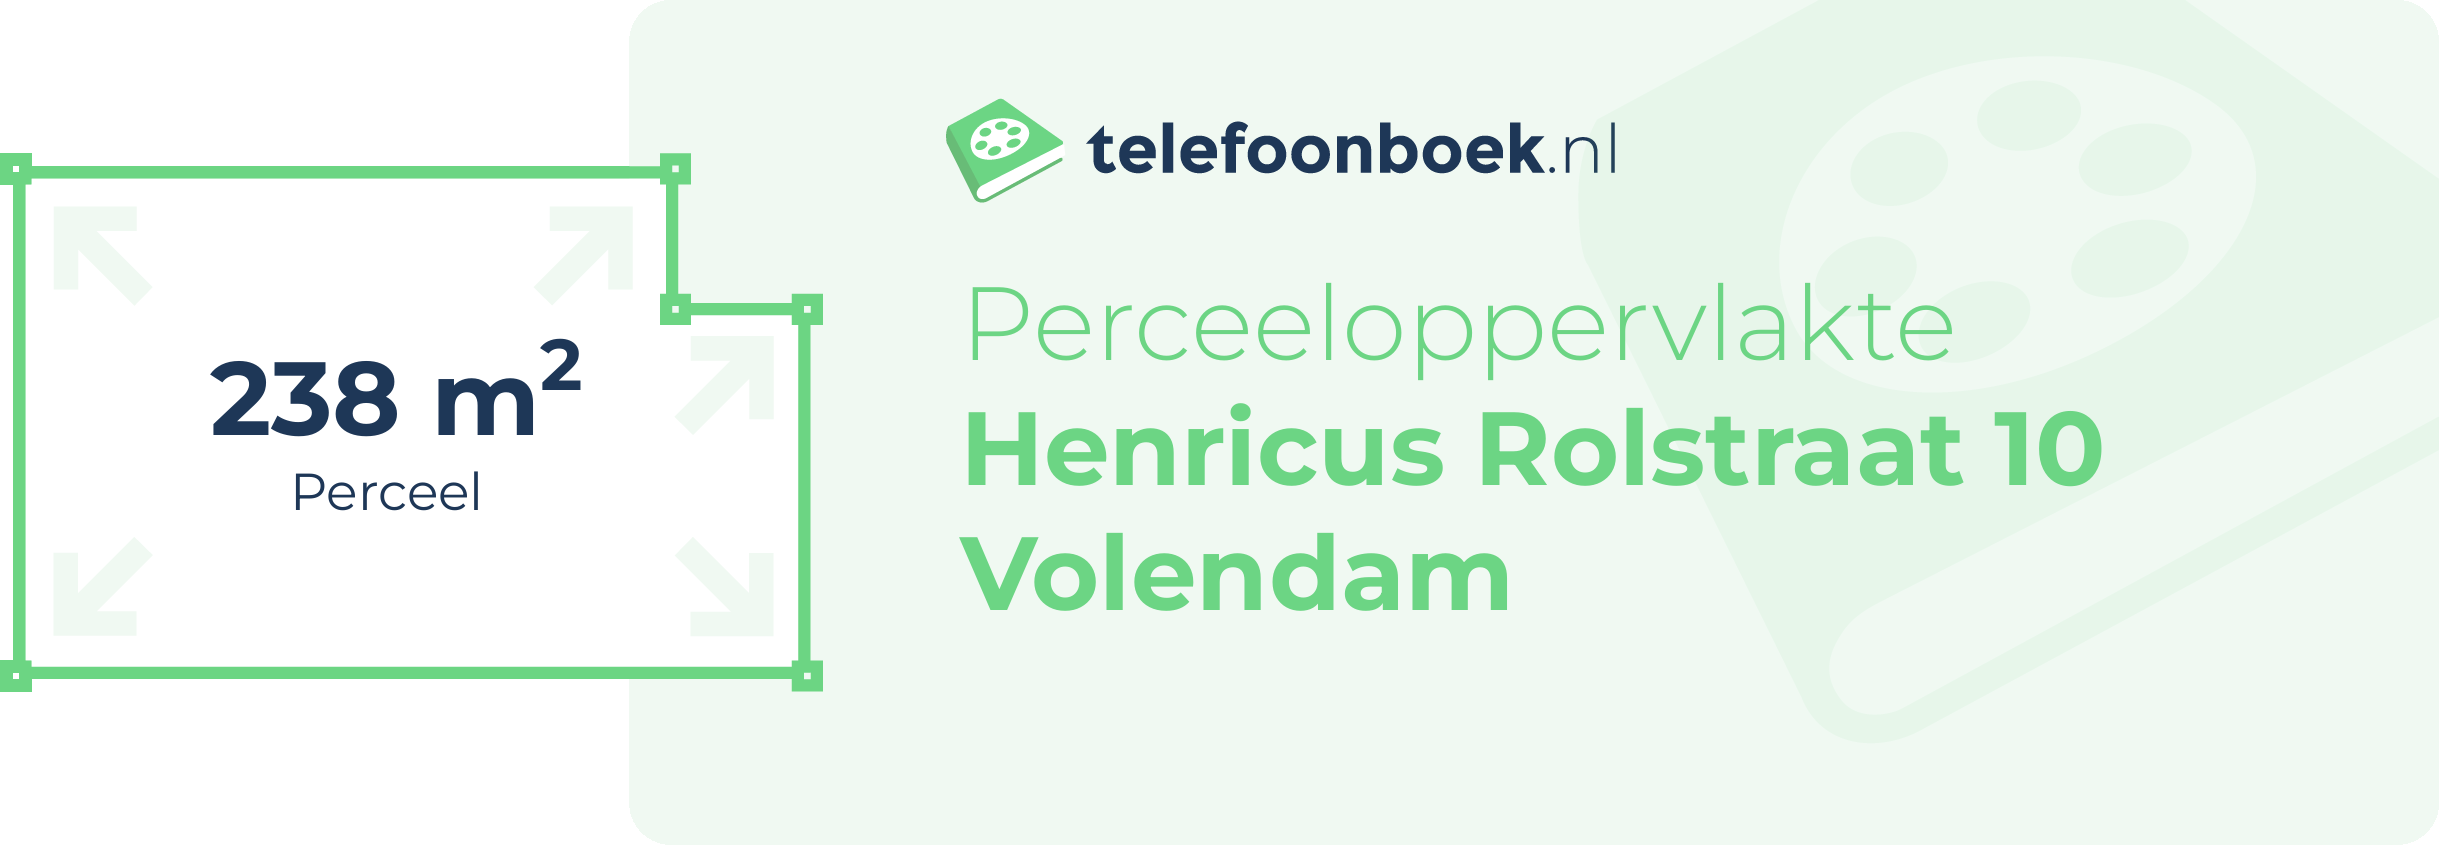 Perceeloppervlakte Henricus Rolstraat 10 Volendam